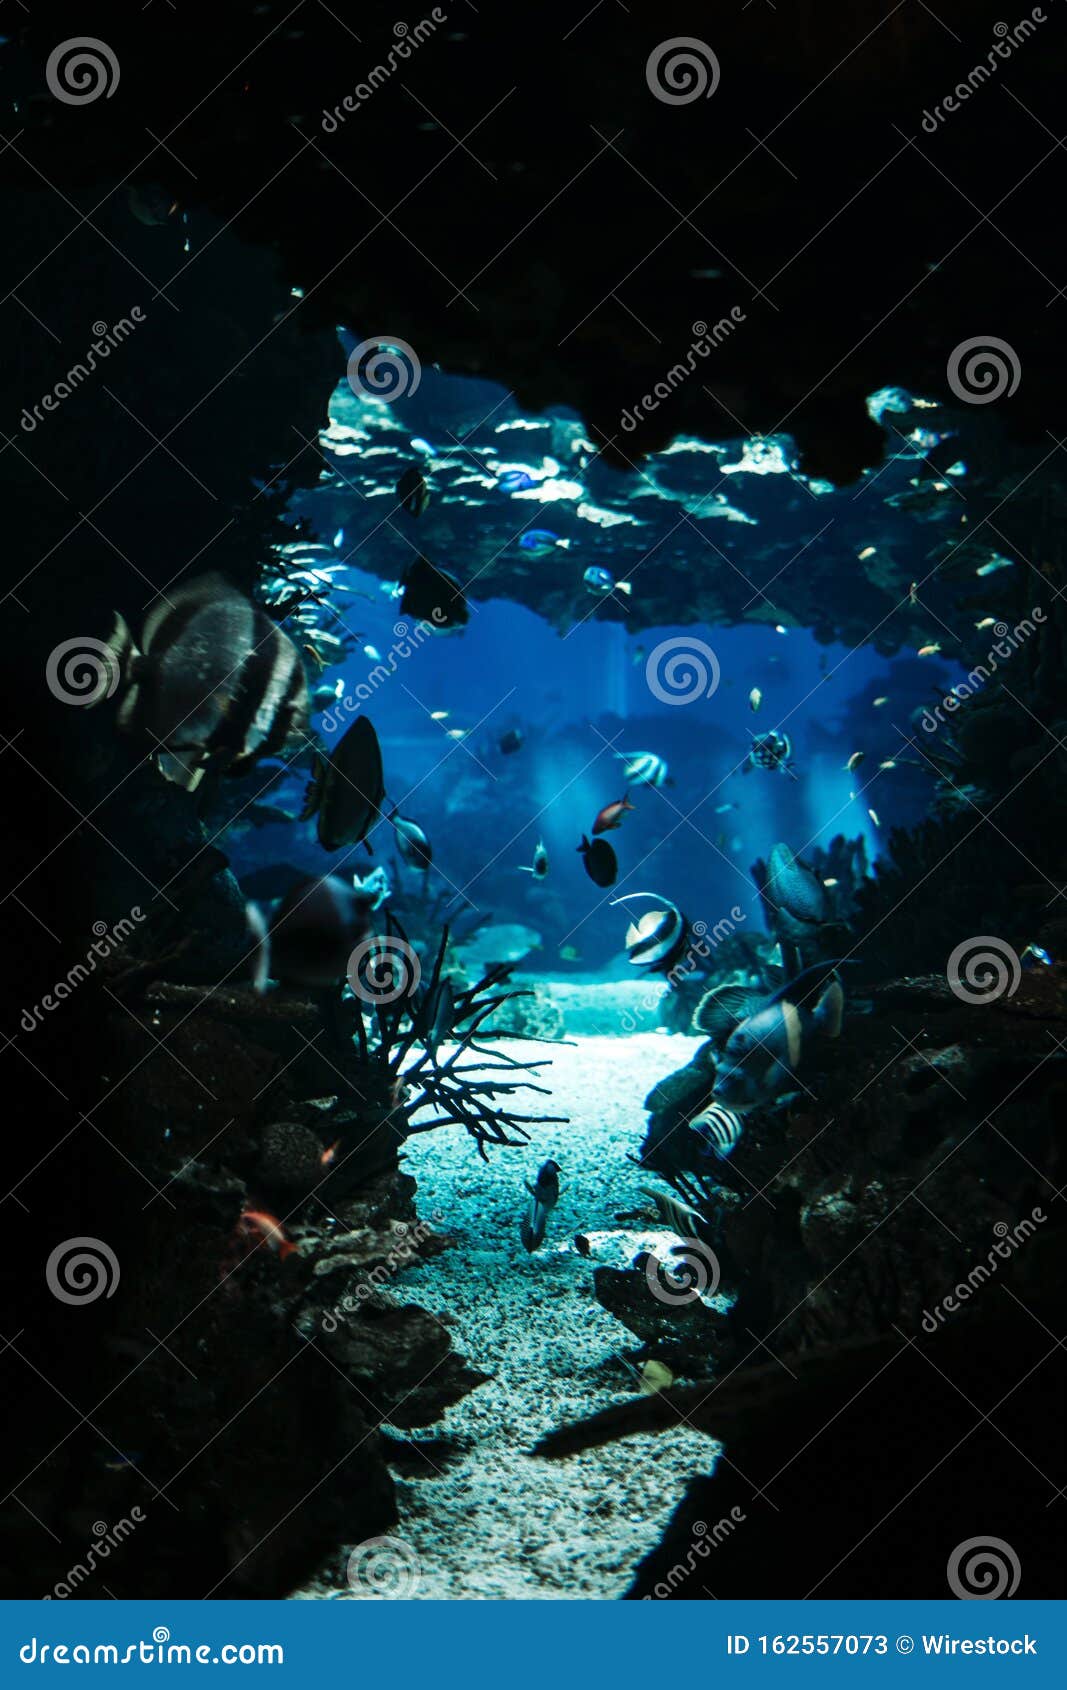 用鱼和珊瑚 完美的垂直壁纸 水下海洋生物垂直拍摄库存图片 图片包括有用鱼和珊瑚 水下海洋生物垂直拍摄